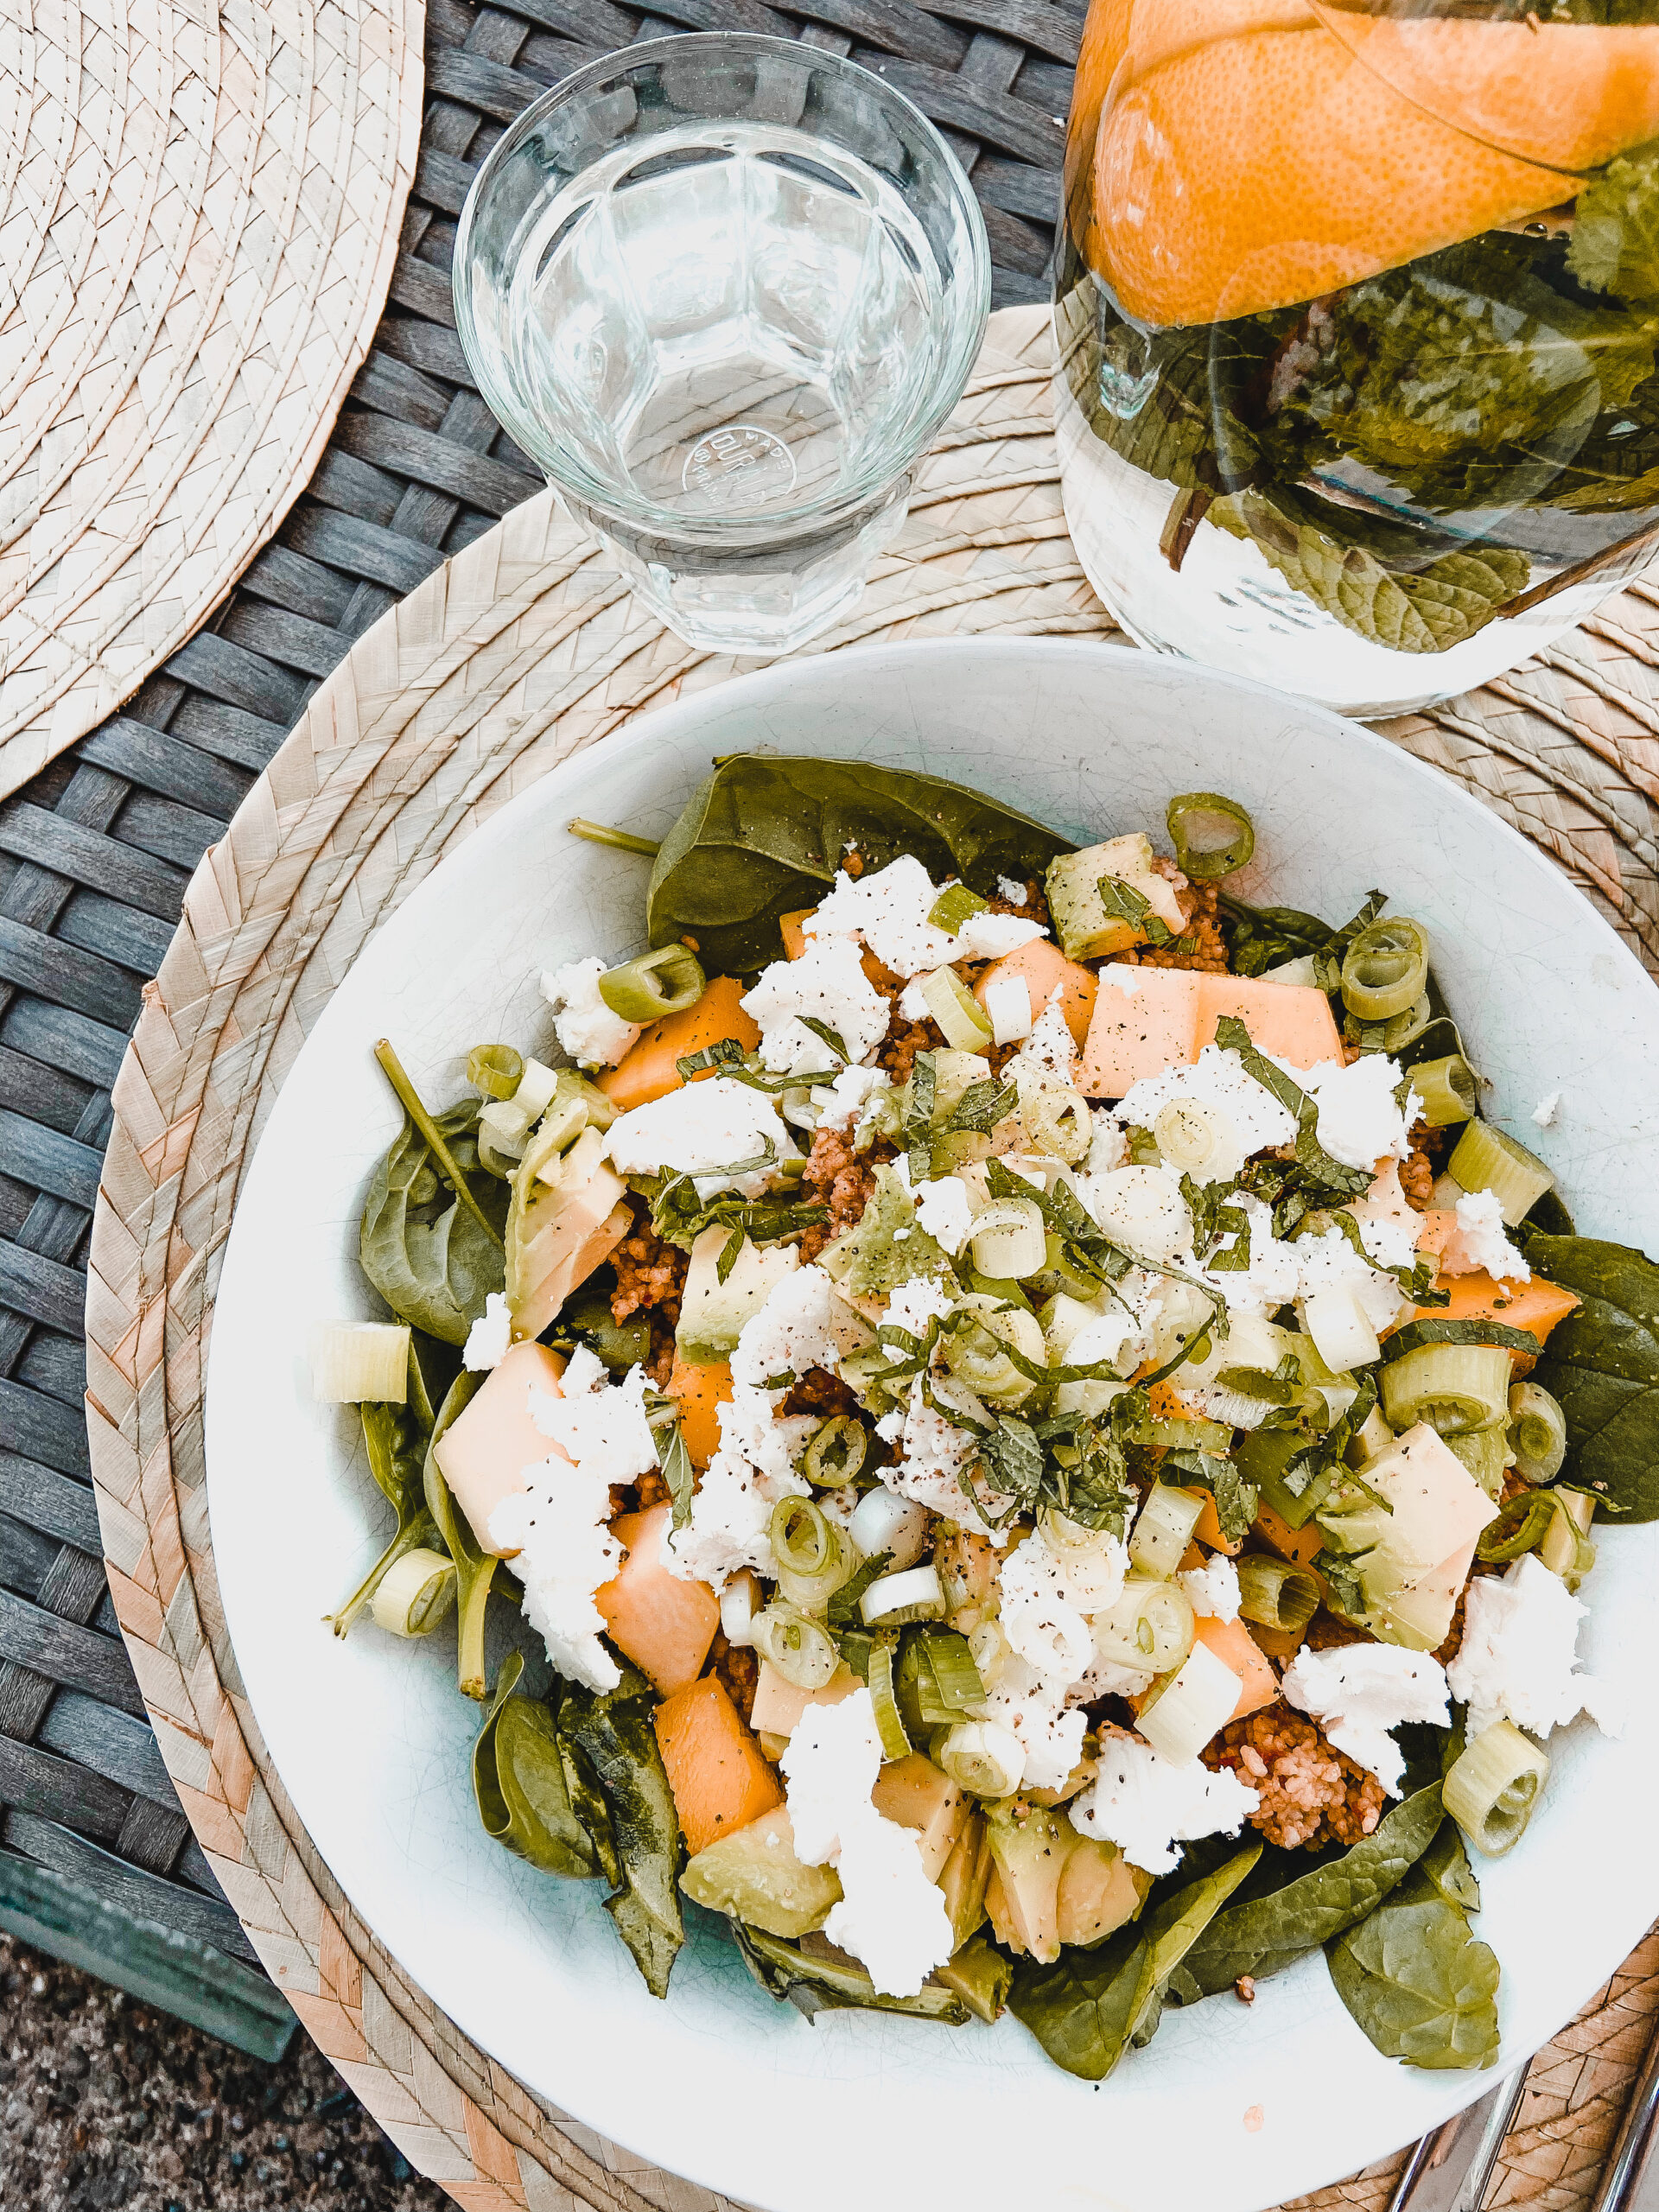 (Photo title + alt text: Het lekkerste Muhammara couscous salade recept voor een zomerse avond en gezonde lunch!)